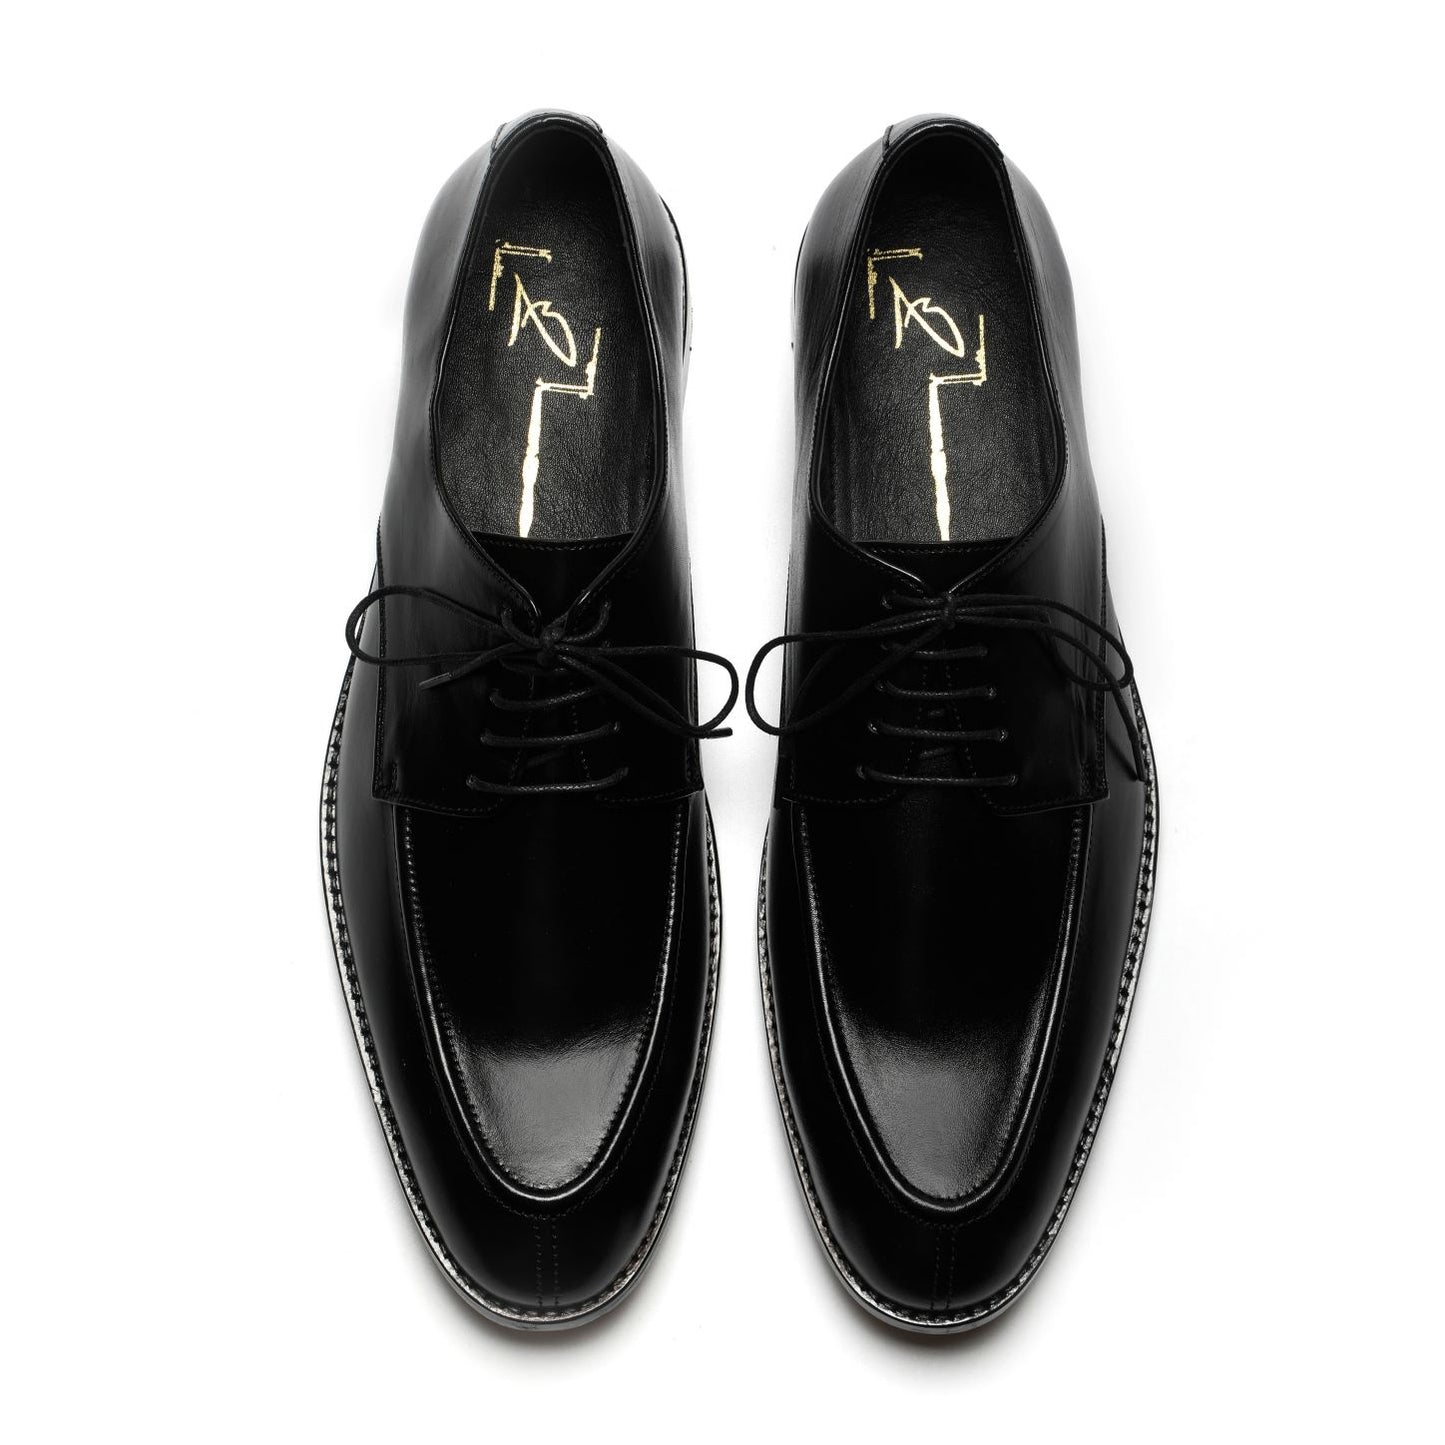 Black lace up Shoes